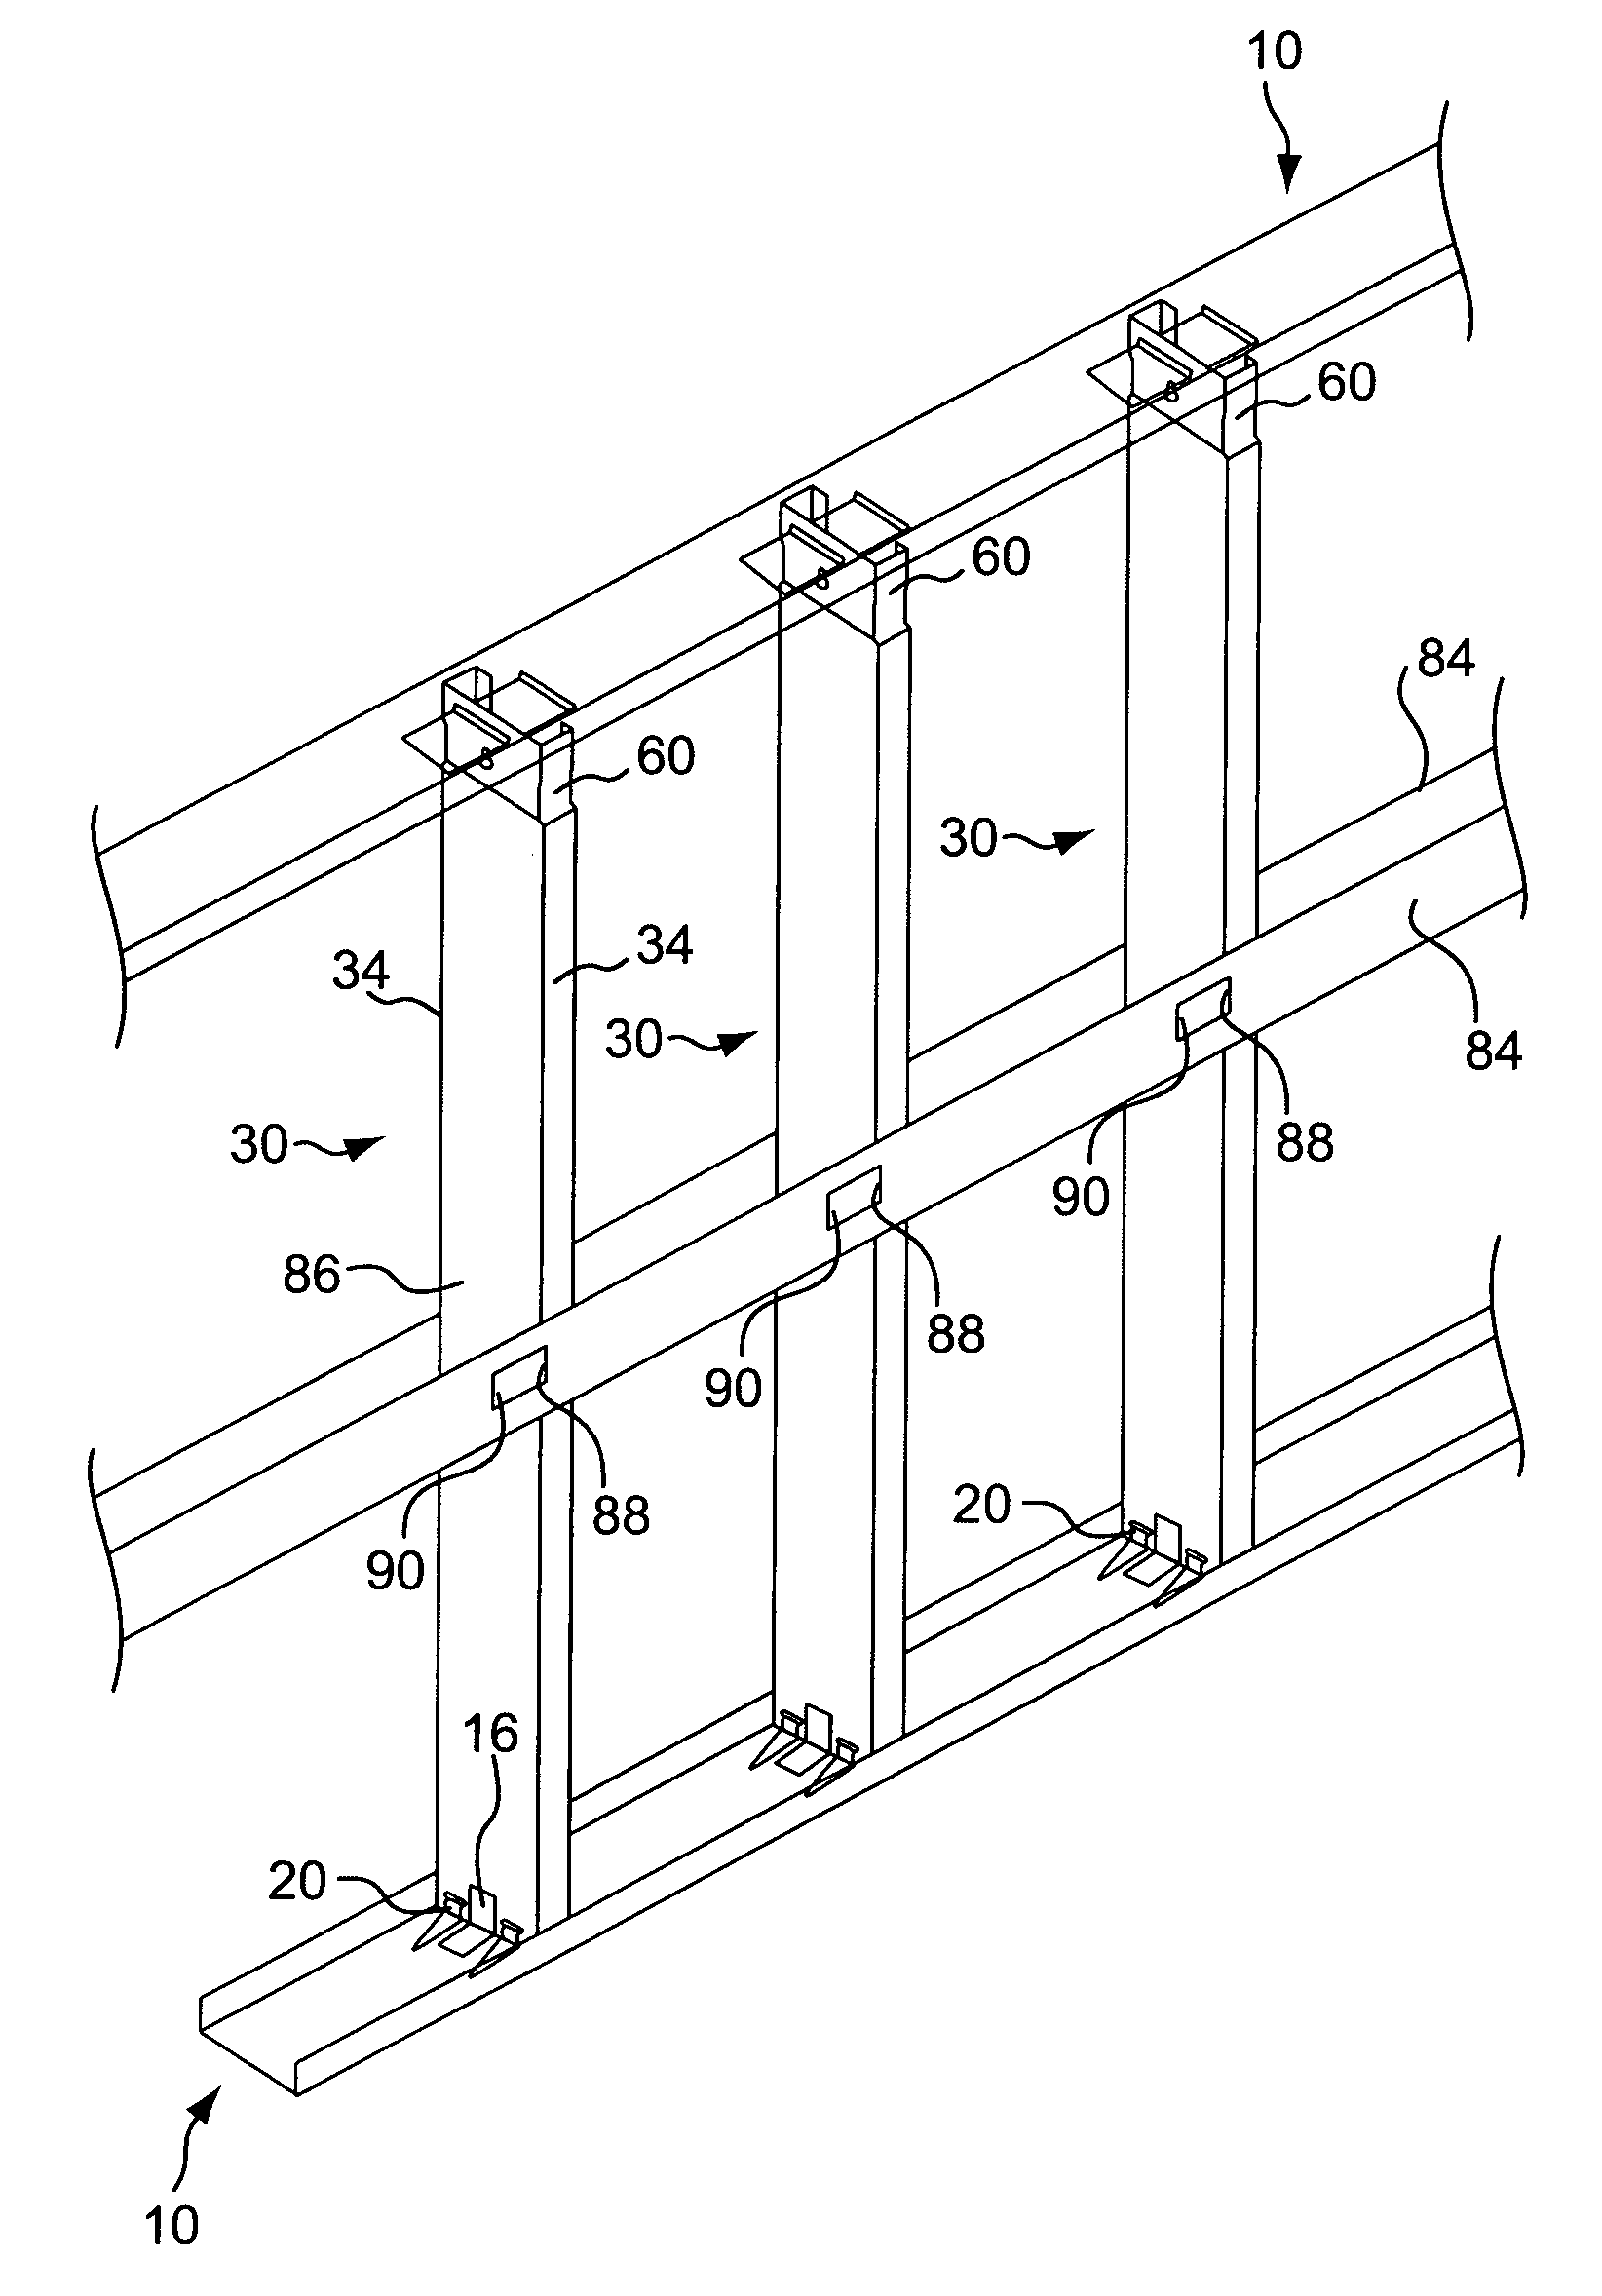 Modular metal wall framing system